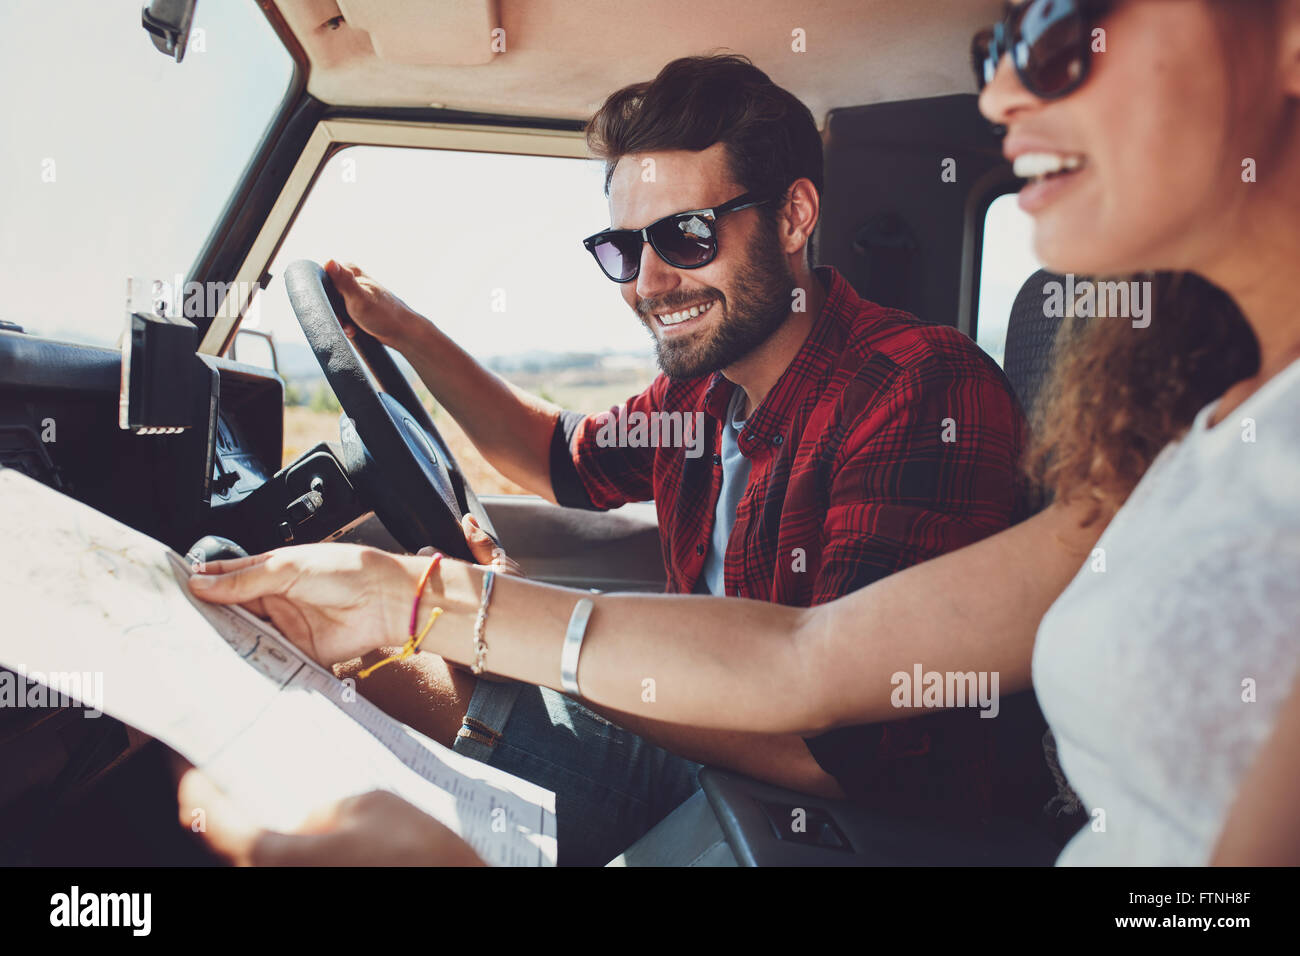 Lächelnd jungen Mann das Auto mit Frau hält einen Fahrplan zu fahren. Junges Paar auf Roadtrip. Stockfoto